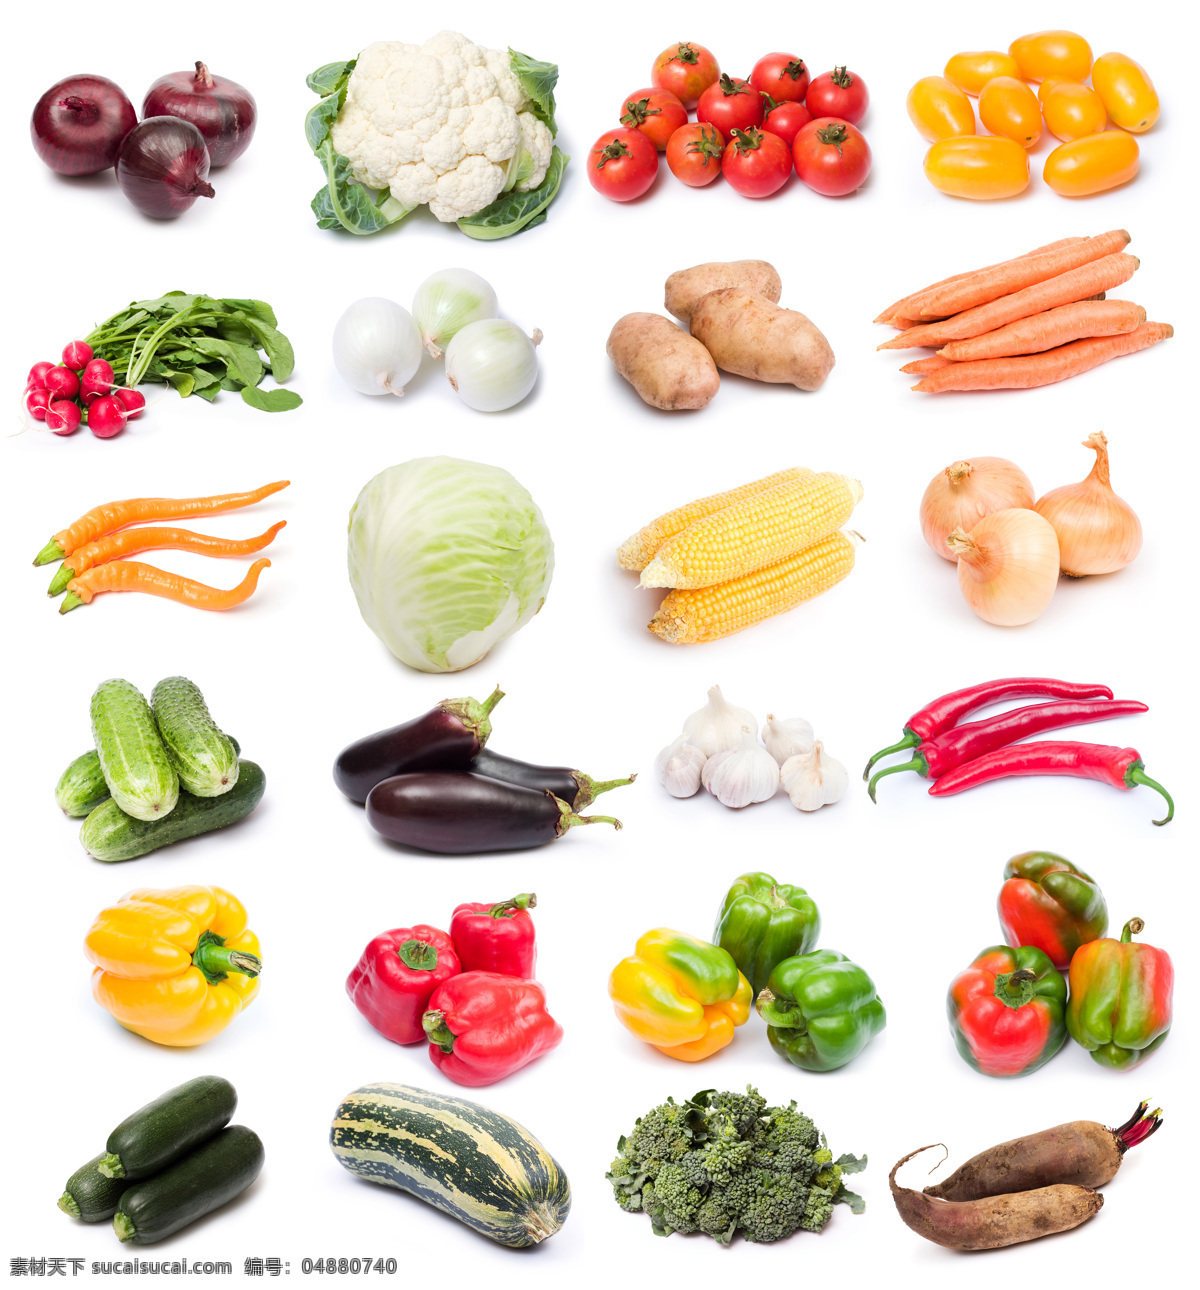 蔬菜背景素材 白菜 玉米 萝卜 辣椒 花菜 蔬菜 绿色蔬菜 新鲜蔬菜 蔬菜背景 水果蔬菜 餐饮美食 白色